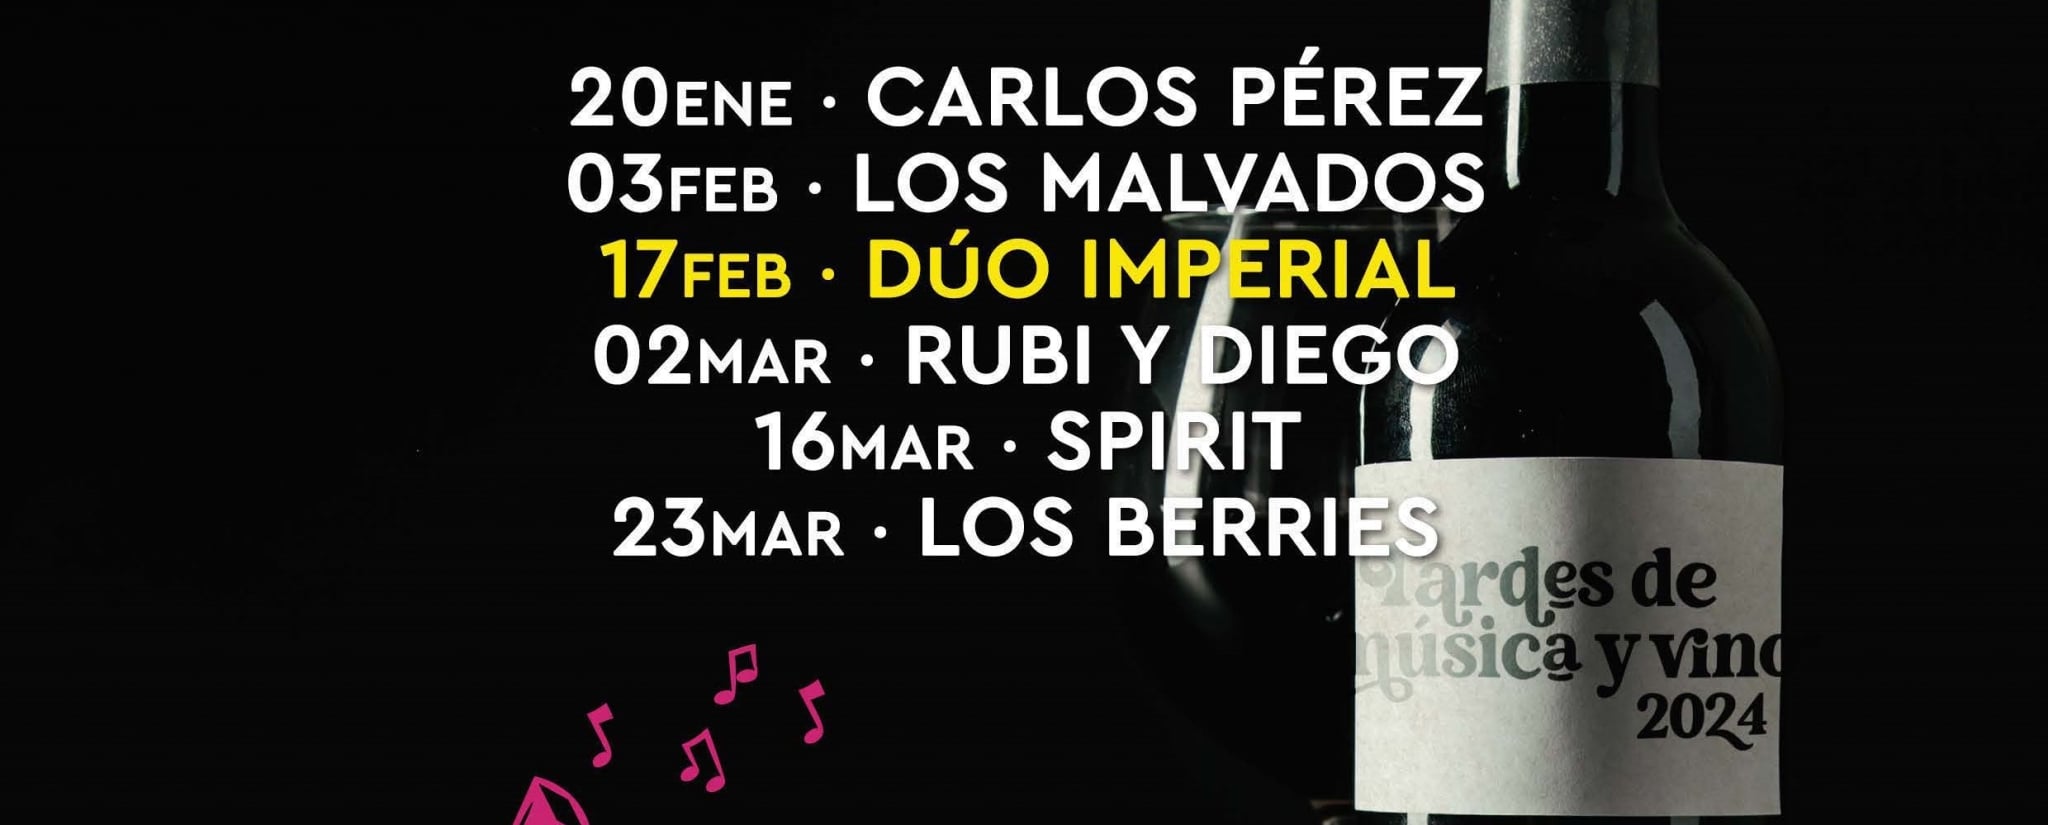 Tardes de Música y Vino 17- febrero- 2024 con DUO IMPERIAL